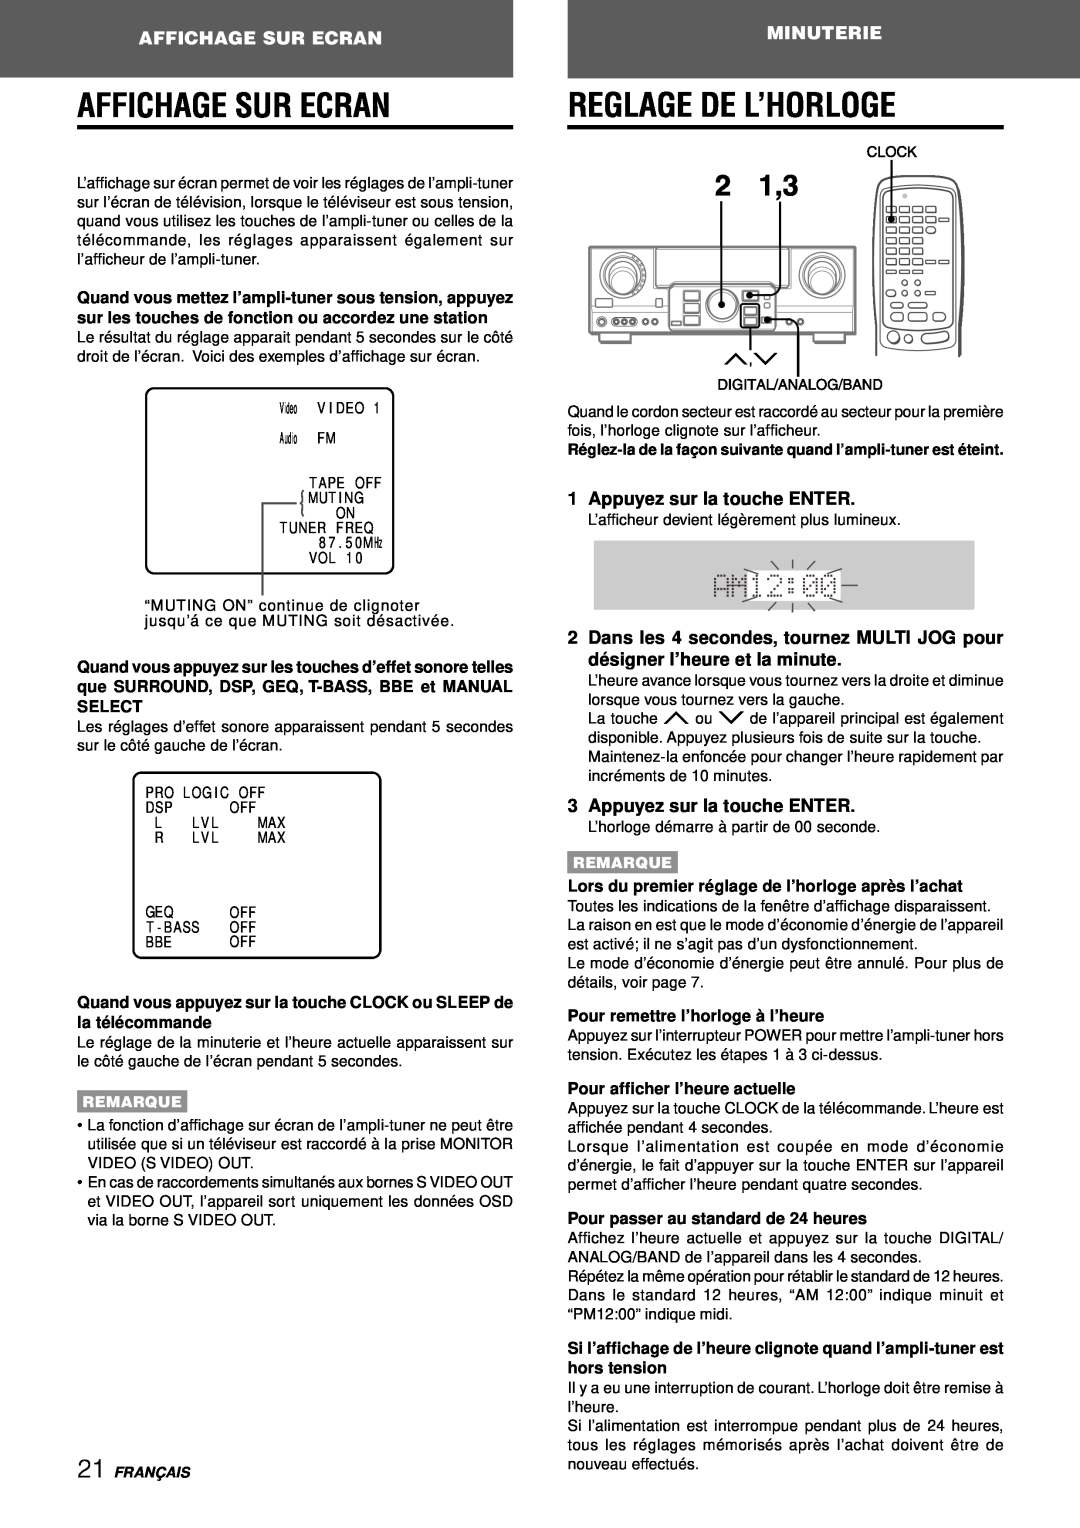 Aiwa AV-D97 manual Affichage Sur Ecran, Reglage De L’Horloge, Minuterie, Appuyez sur la touche ENTER, Remarque, Franç Ais 